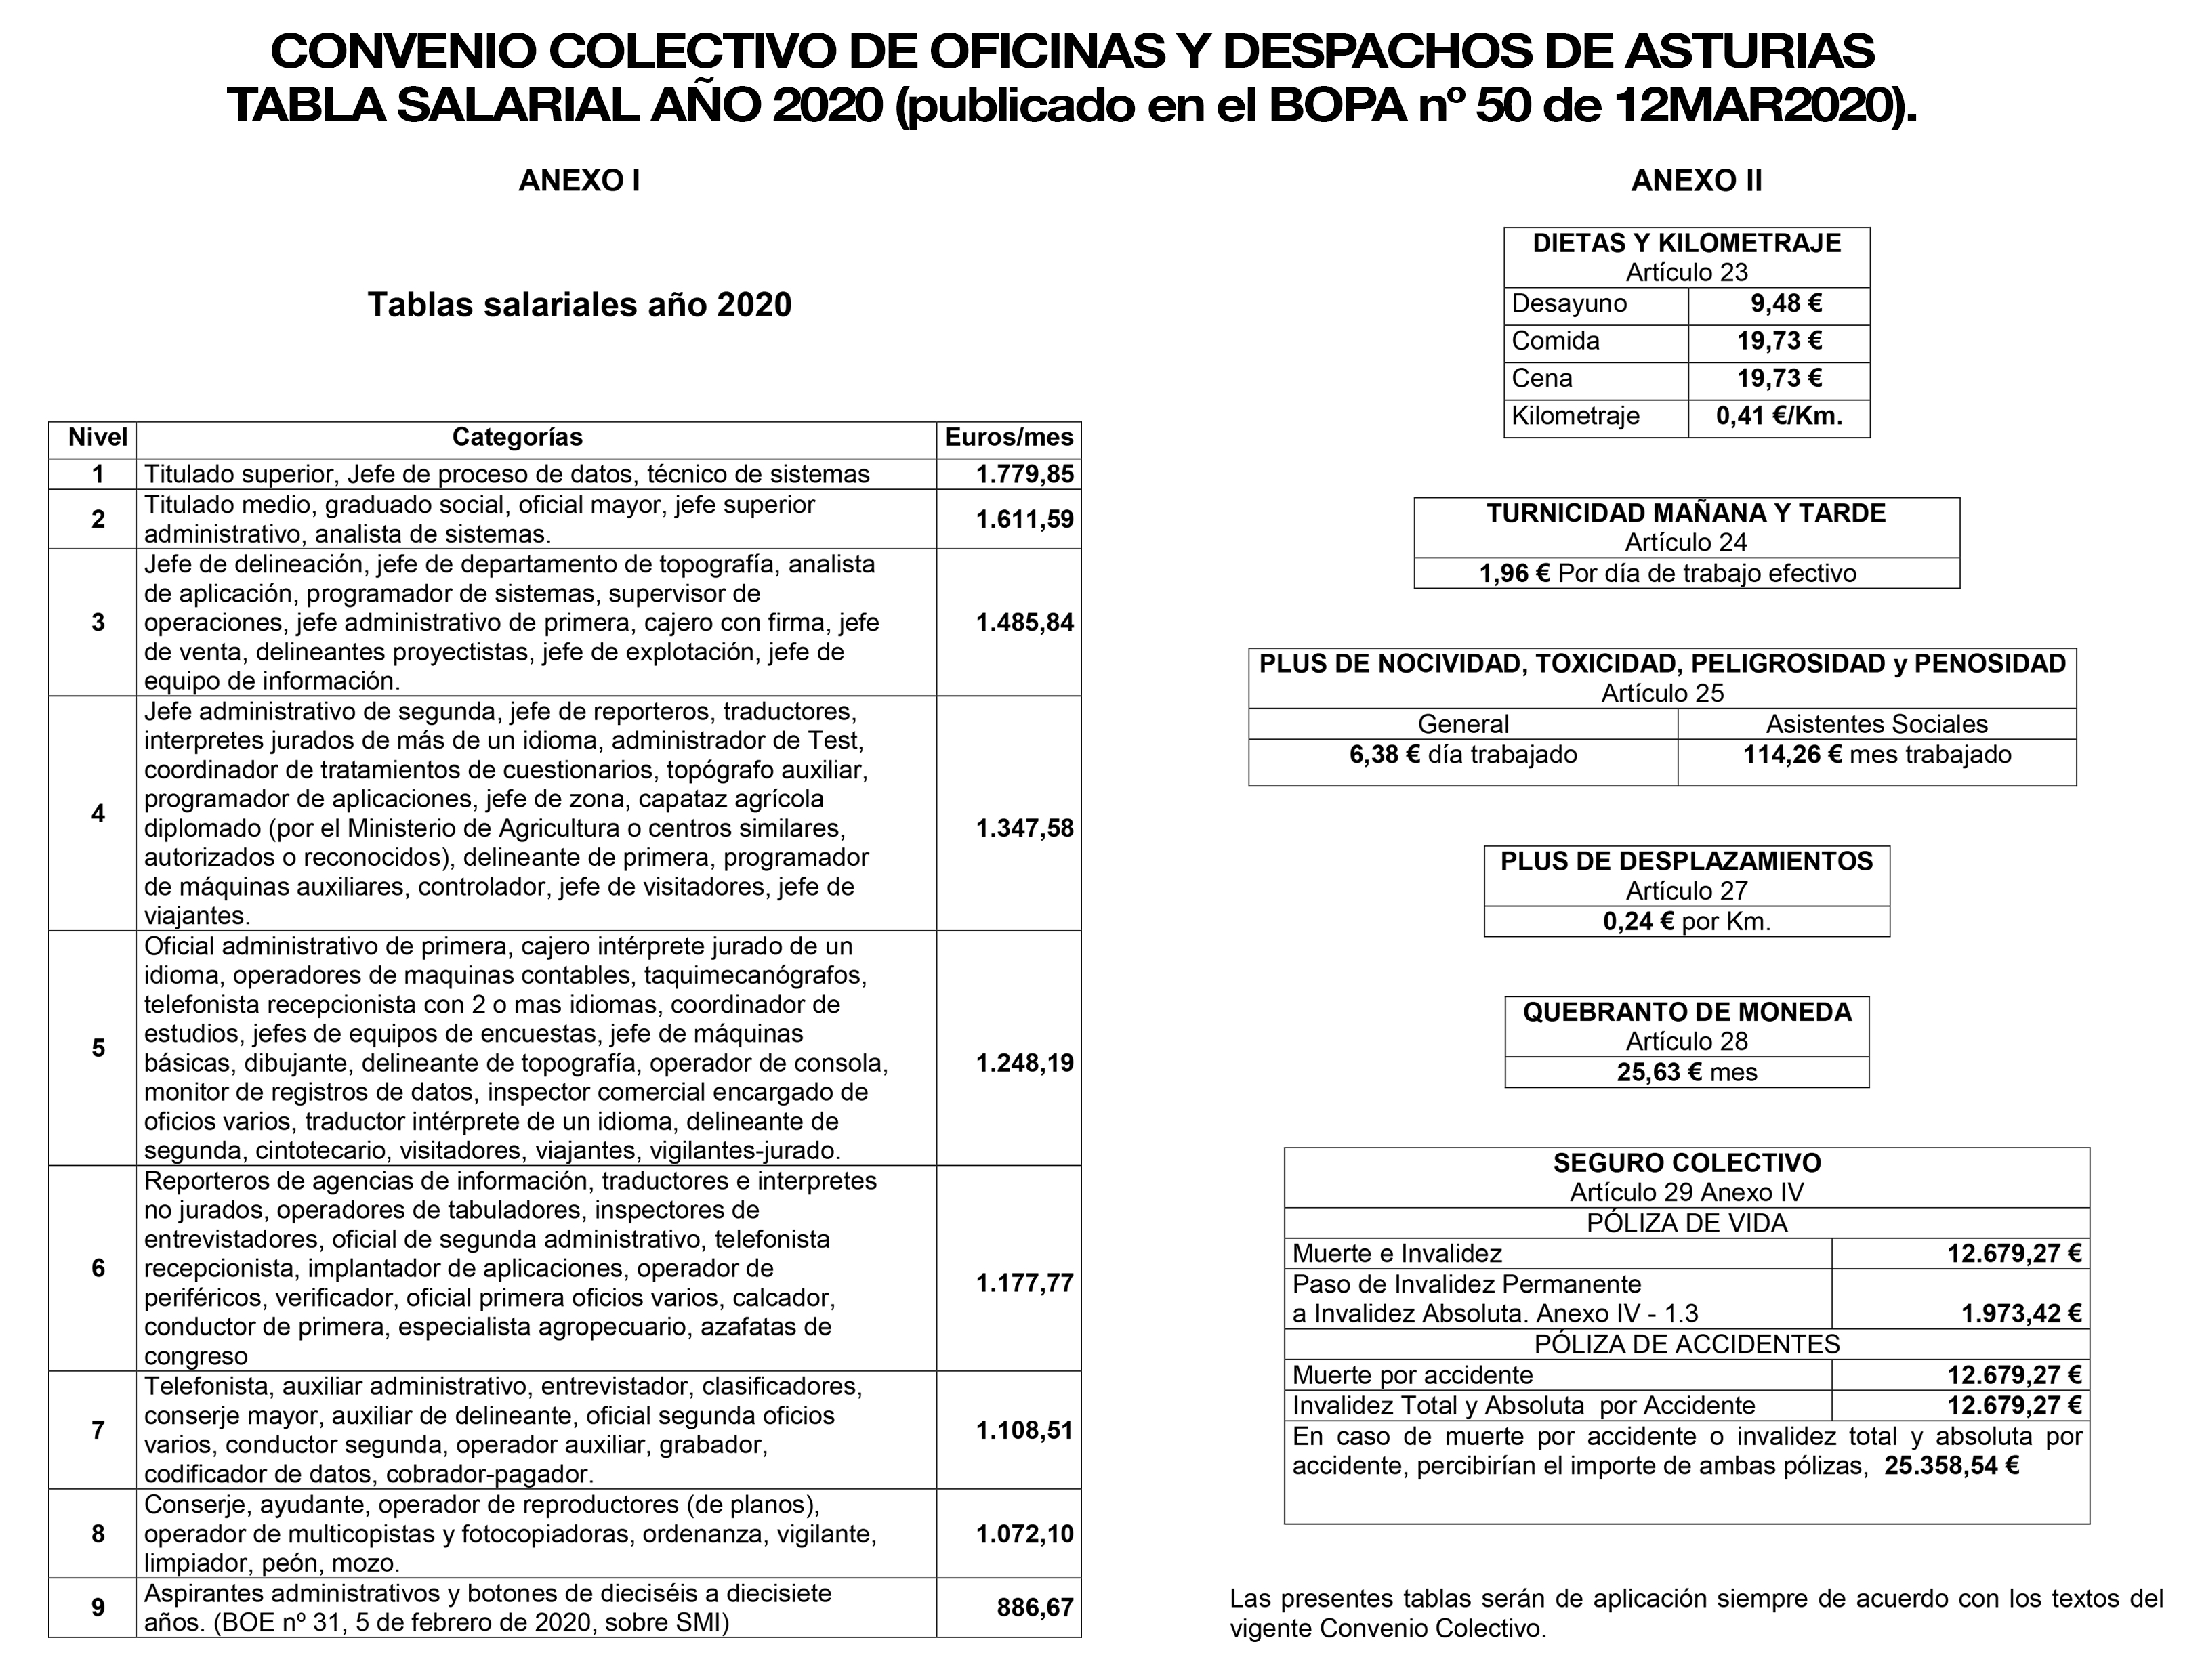 tabla salarial oficinas y despachos de asturias año 2020